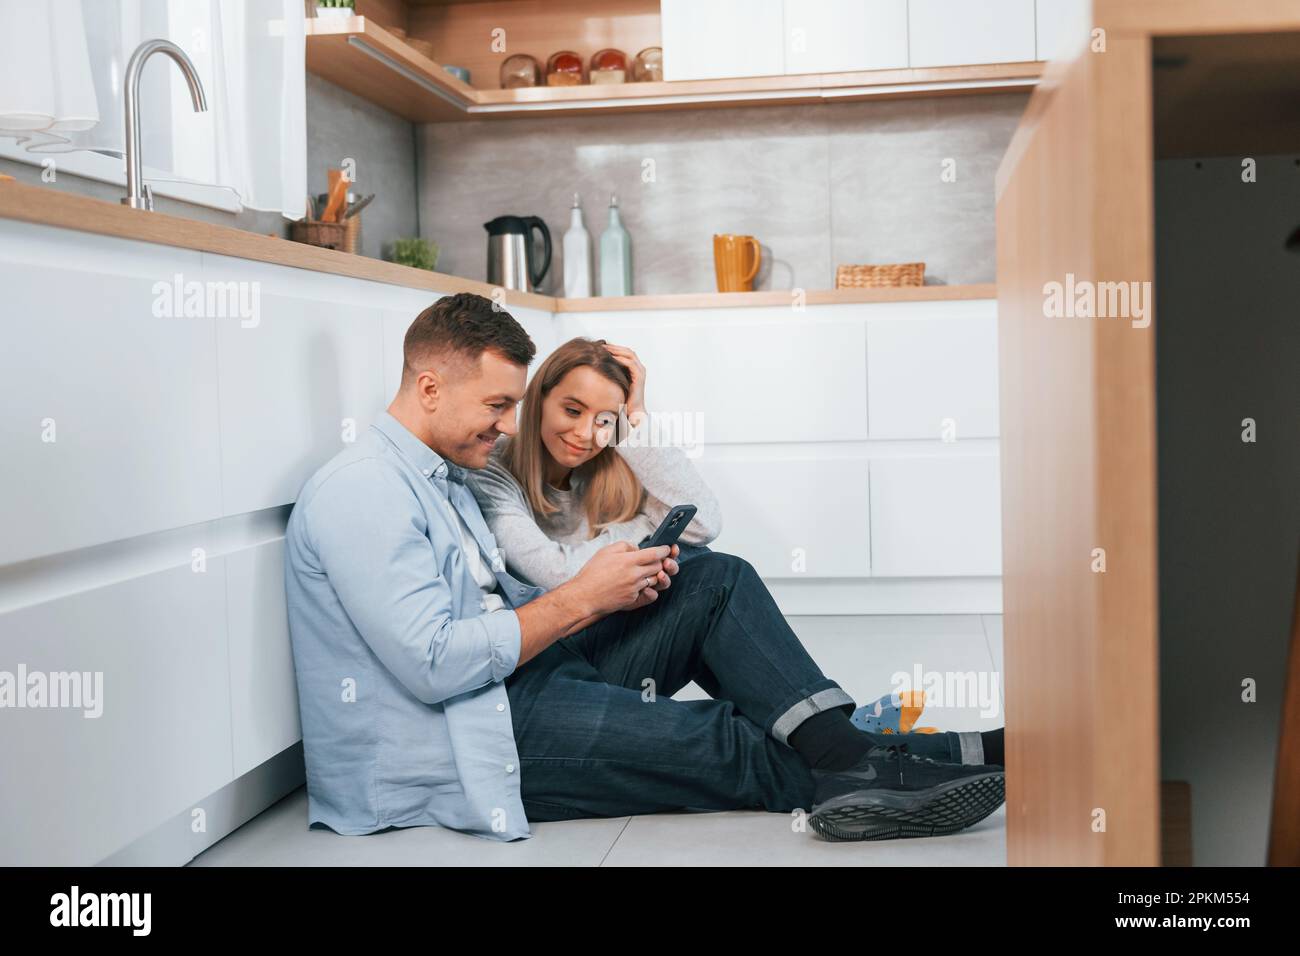 Couple sitting on the floor of modern kitchen. Stock Photo